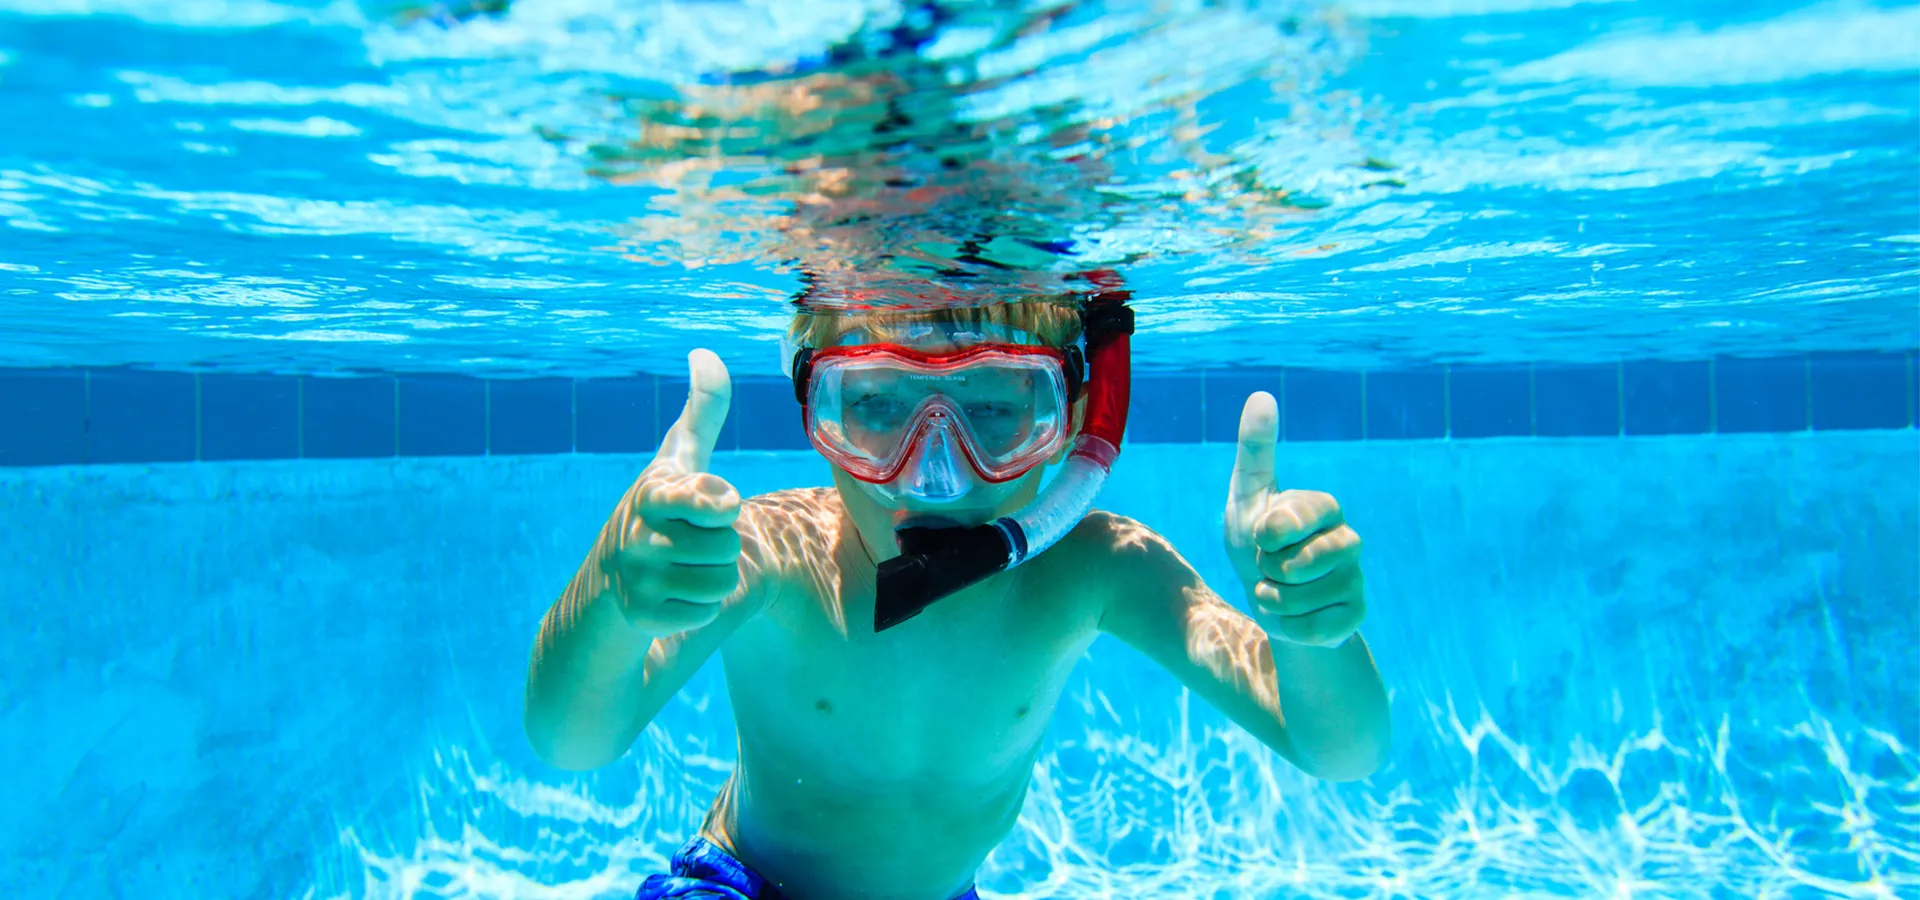 Junge mit Taucherbrille und Schnorchel unter Wasser